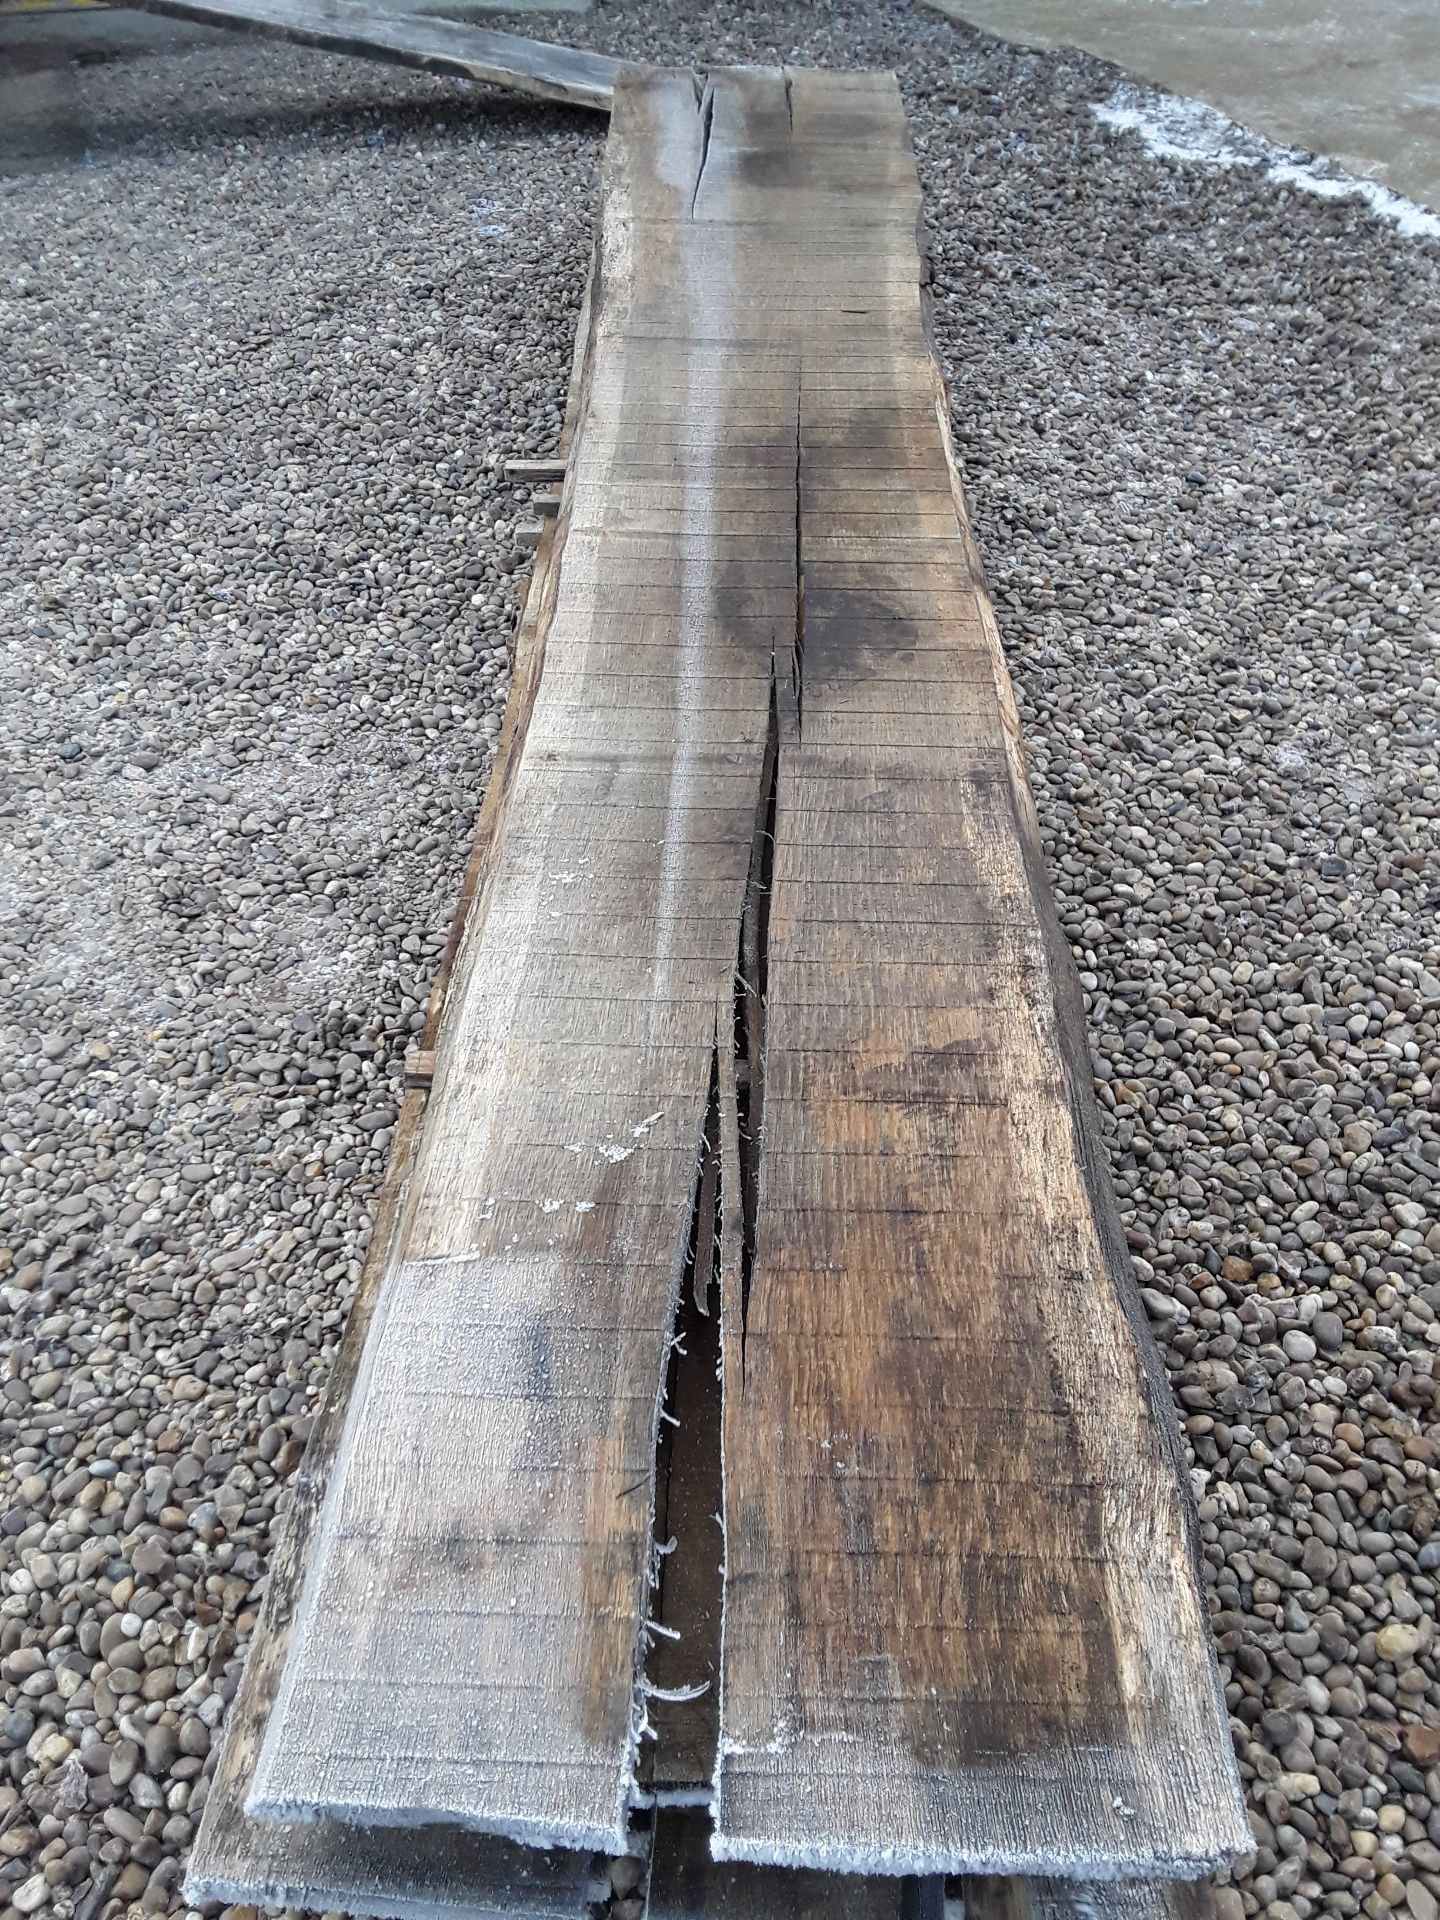 10 x Hardwood Timber Sawn Seasoned English Oak Waney Edge / Live Edge Boards/ Planks - Image 14 of 15